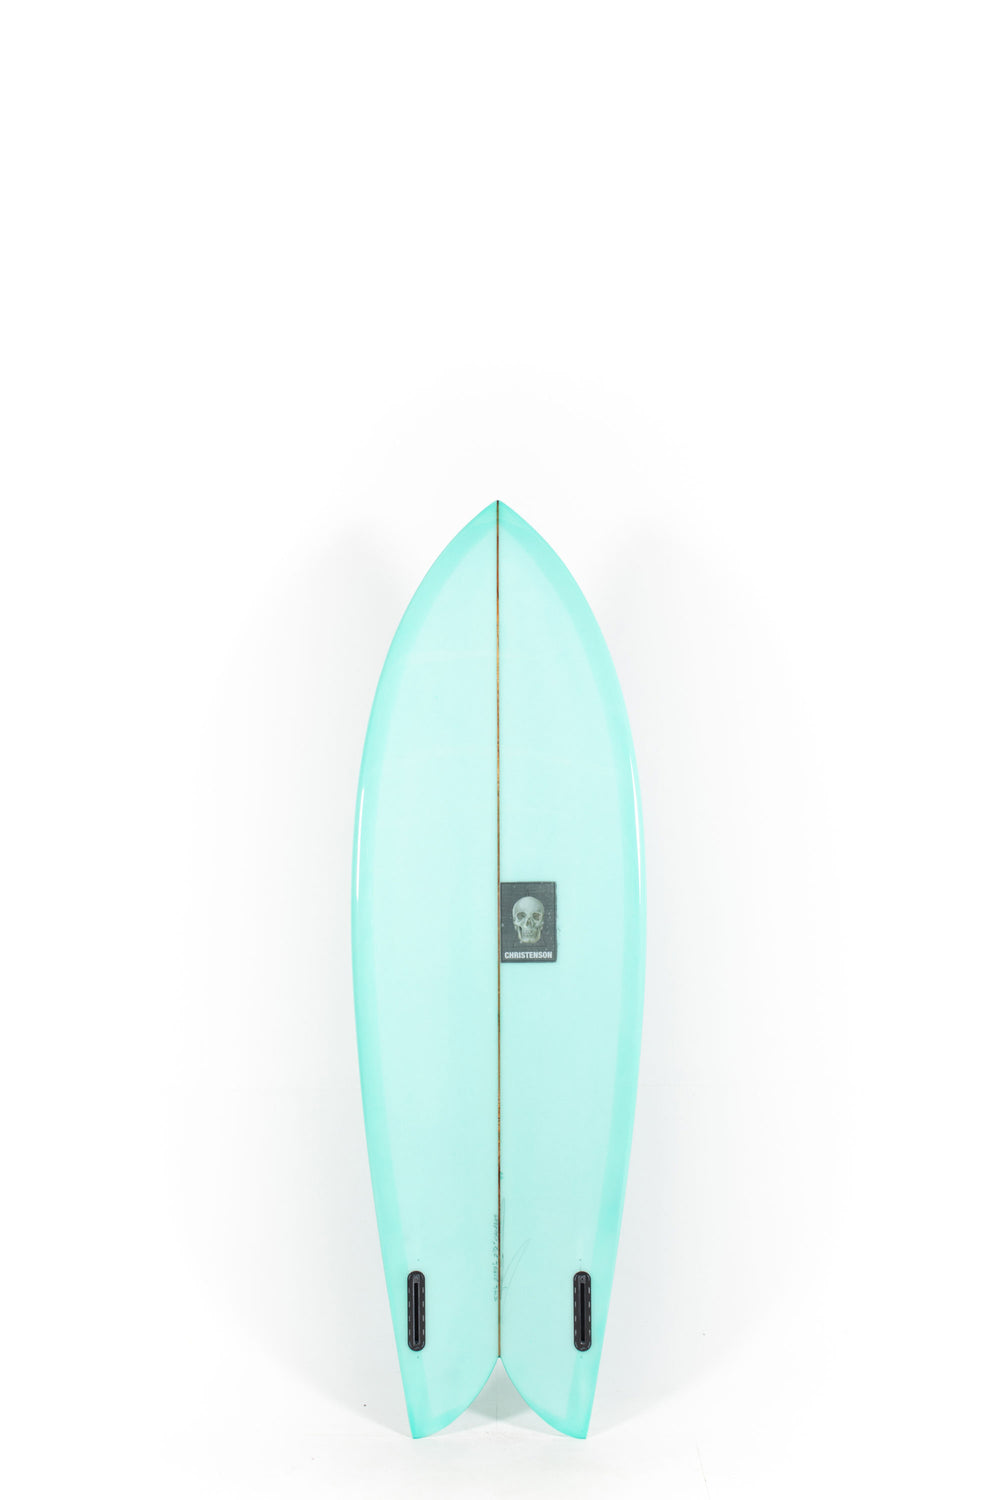 Christenson Surfboards | CHRIS FISH | Shop at PUKAS SURF SHOP